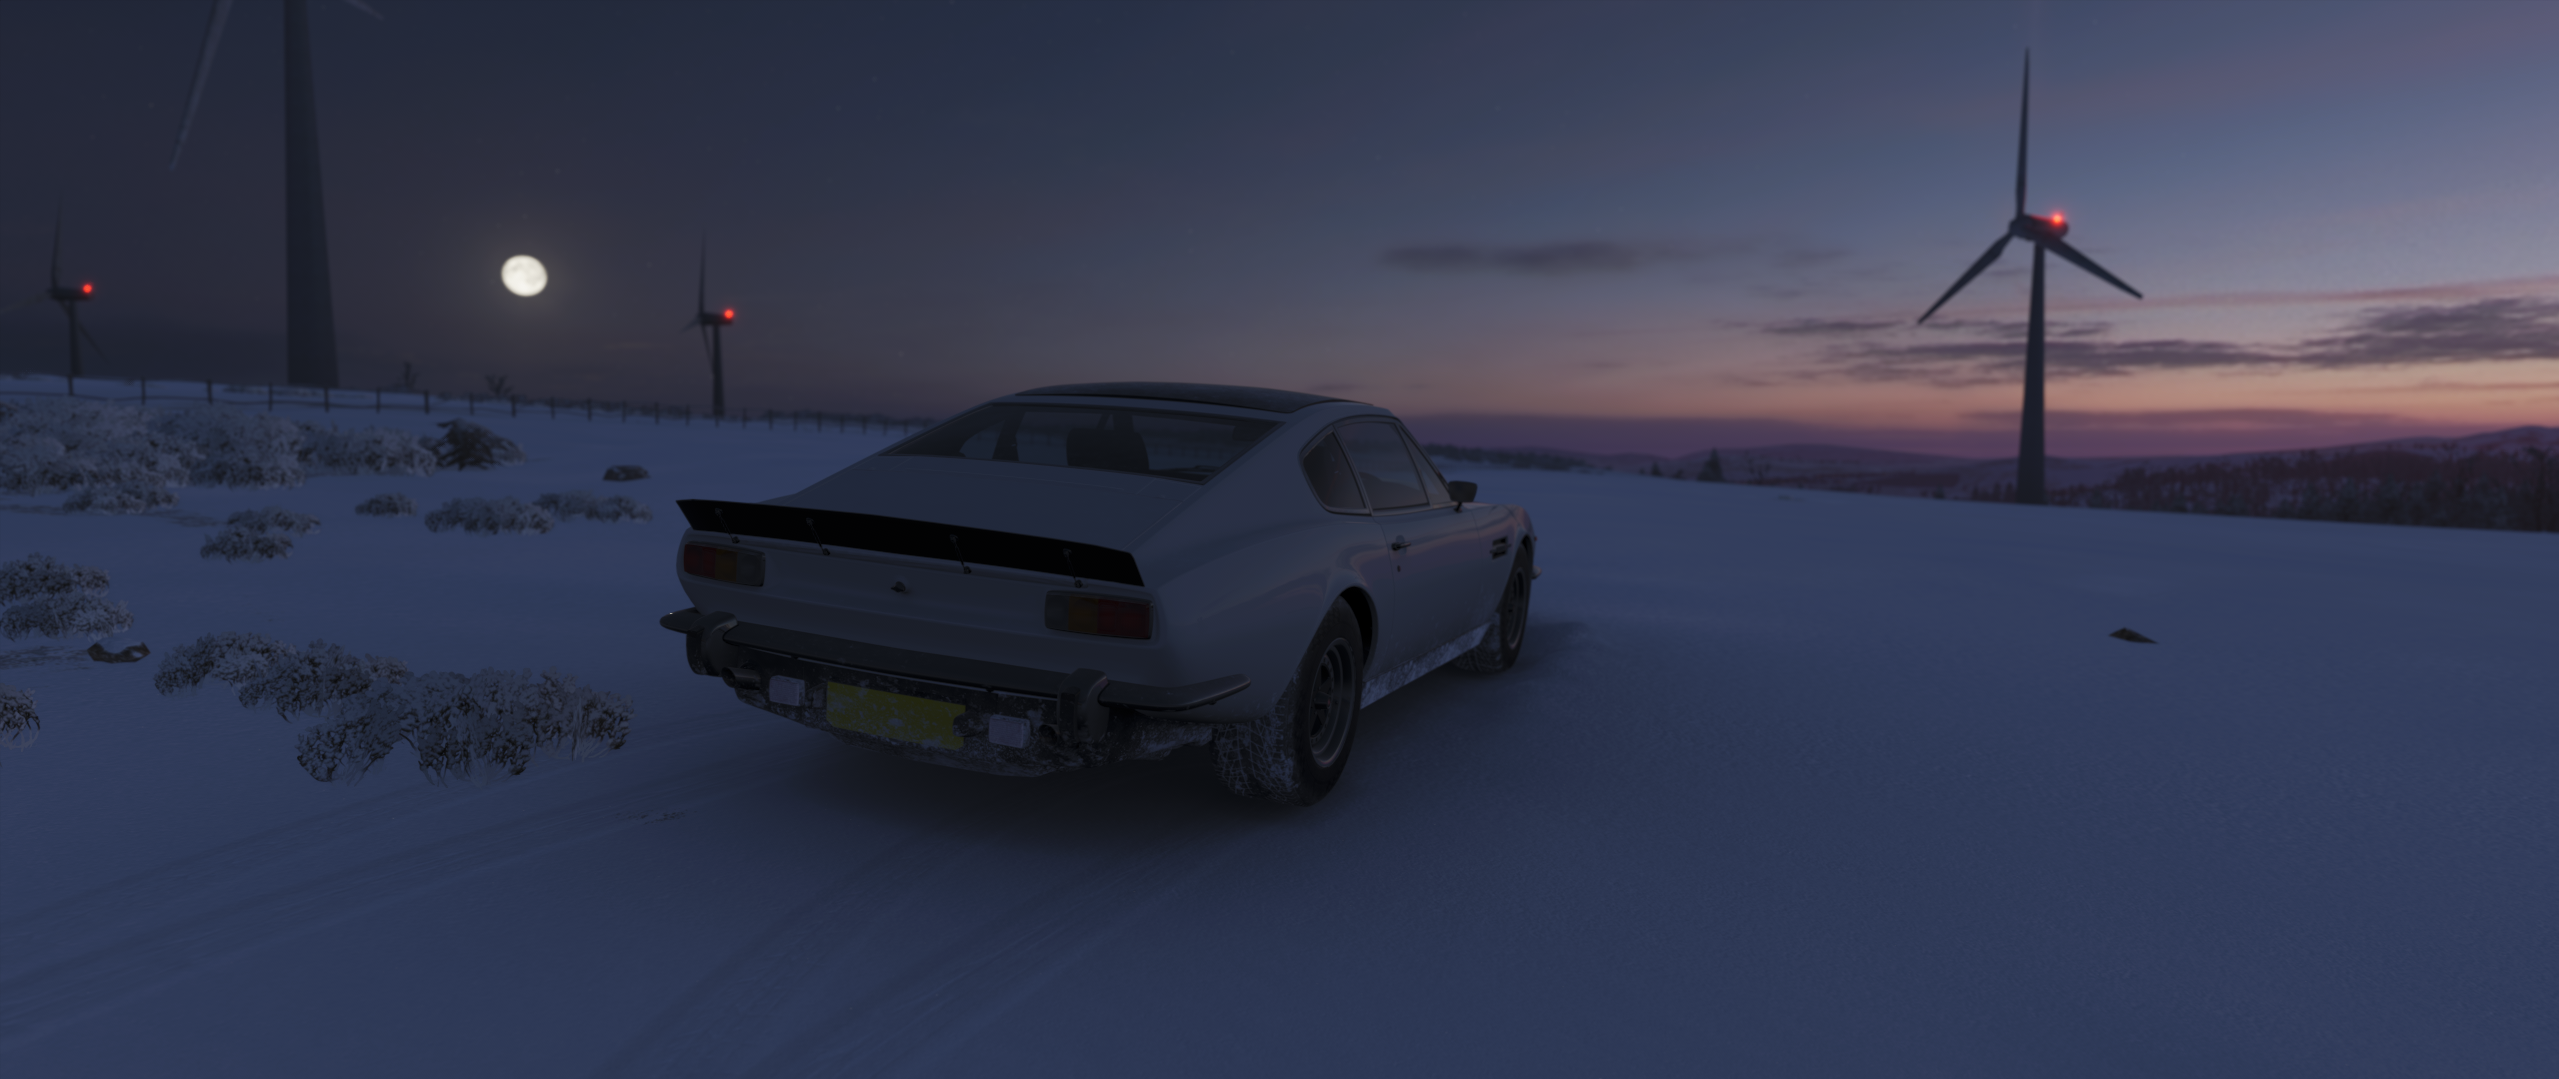 Forza Horizon 4 Aston Martin 2559x1079